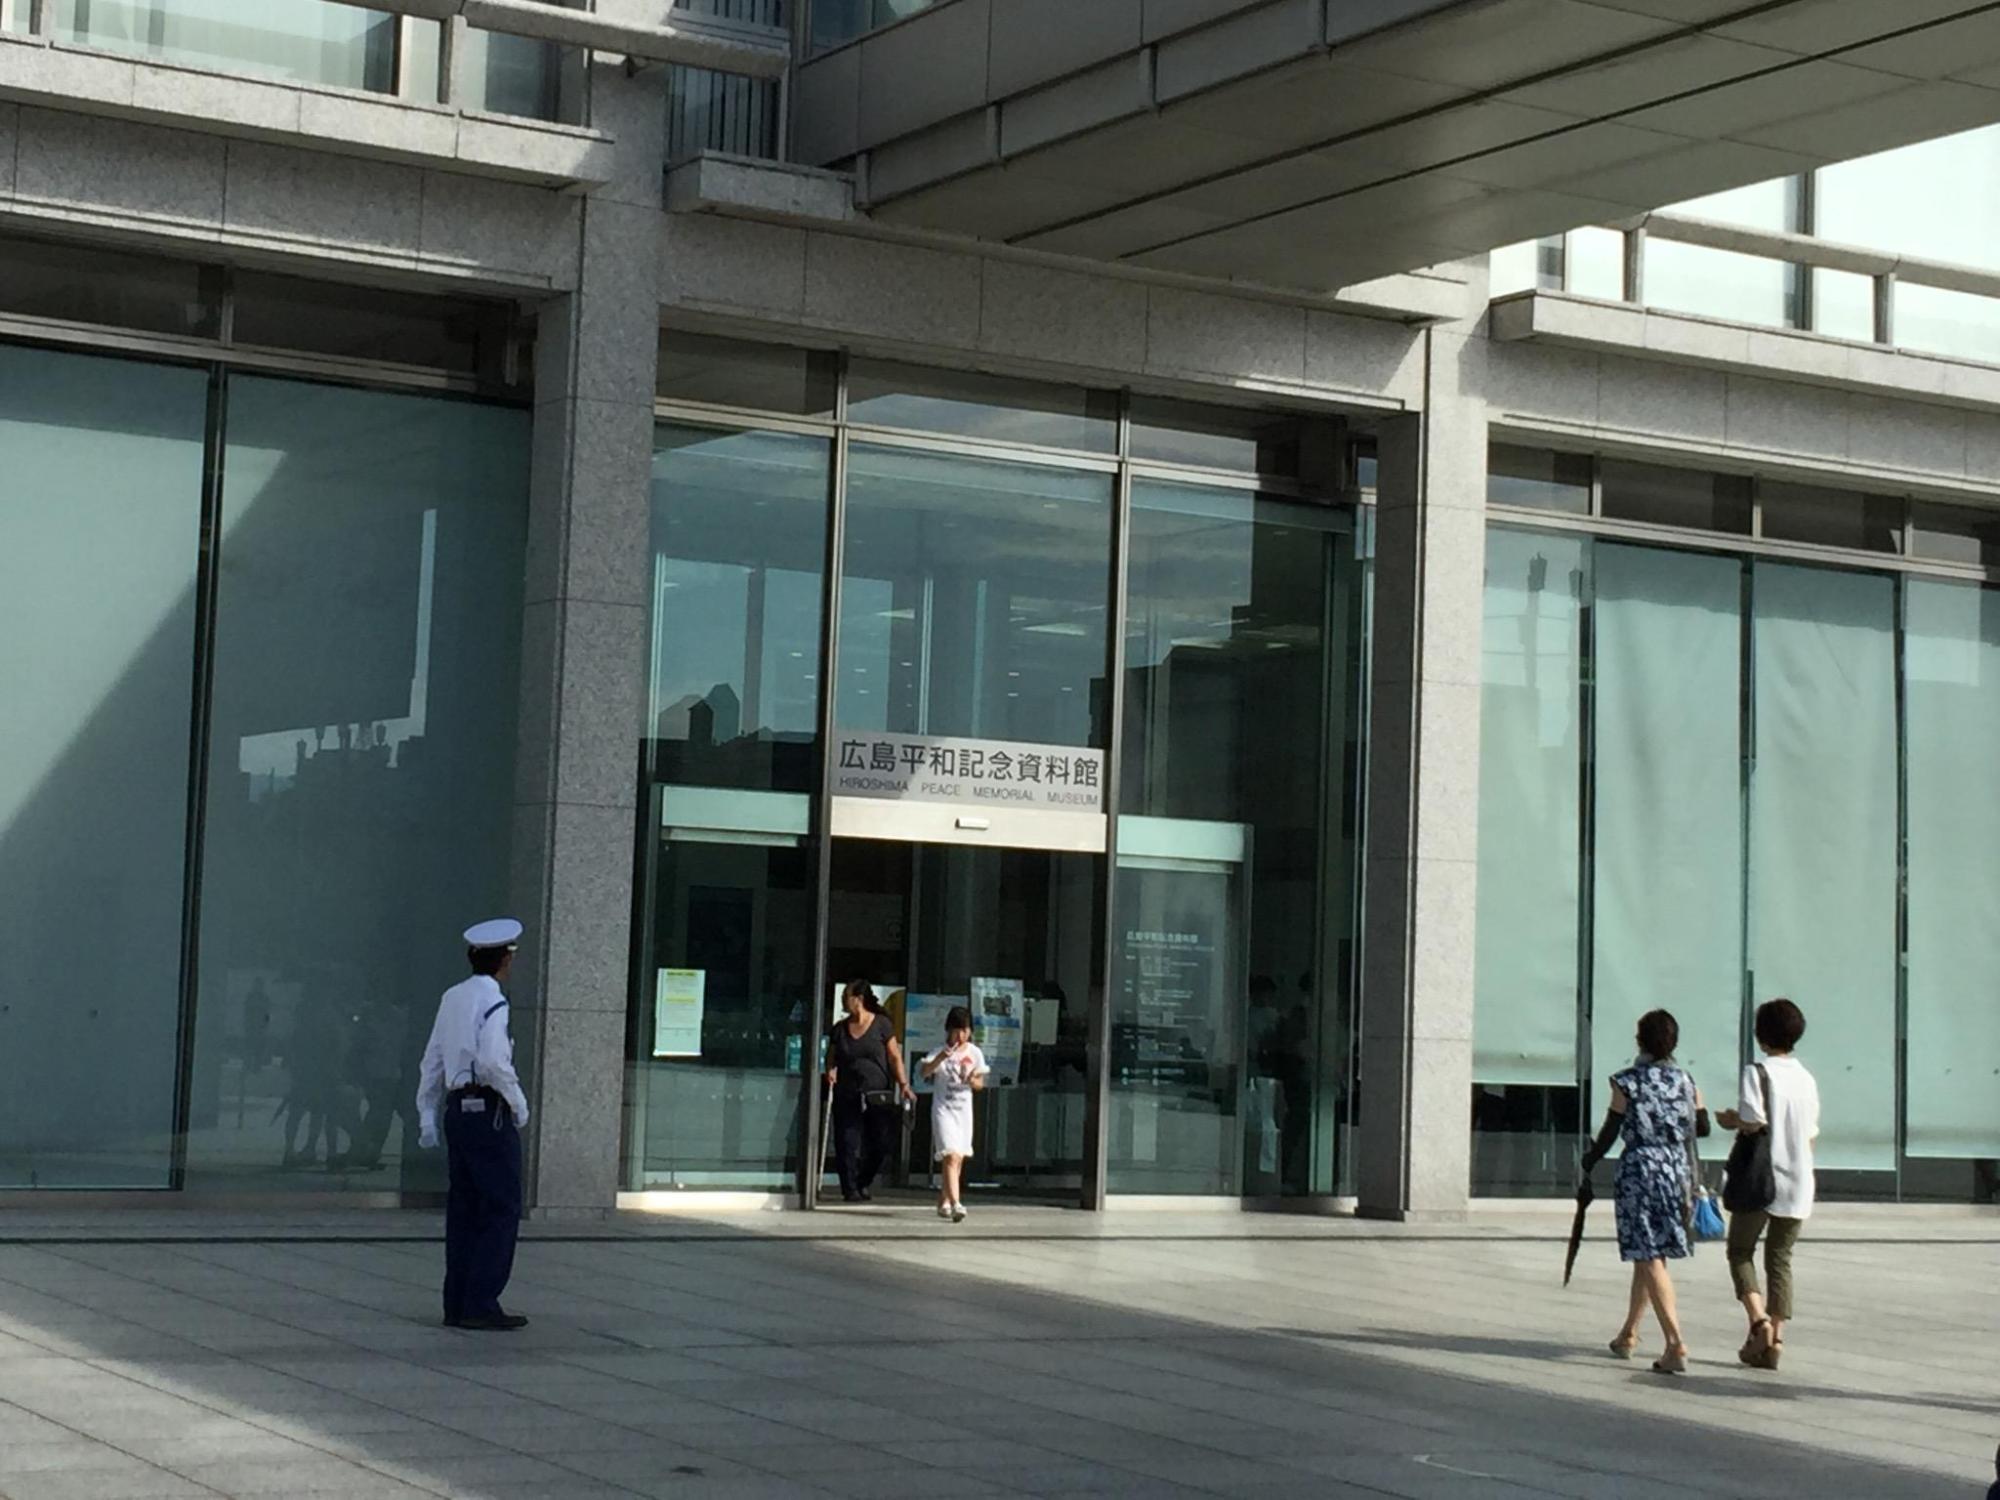 広島平和記念資料館の玄関前で入館者と警備員が写っている写真